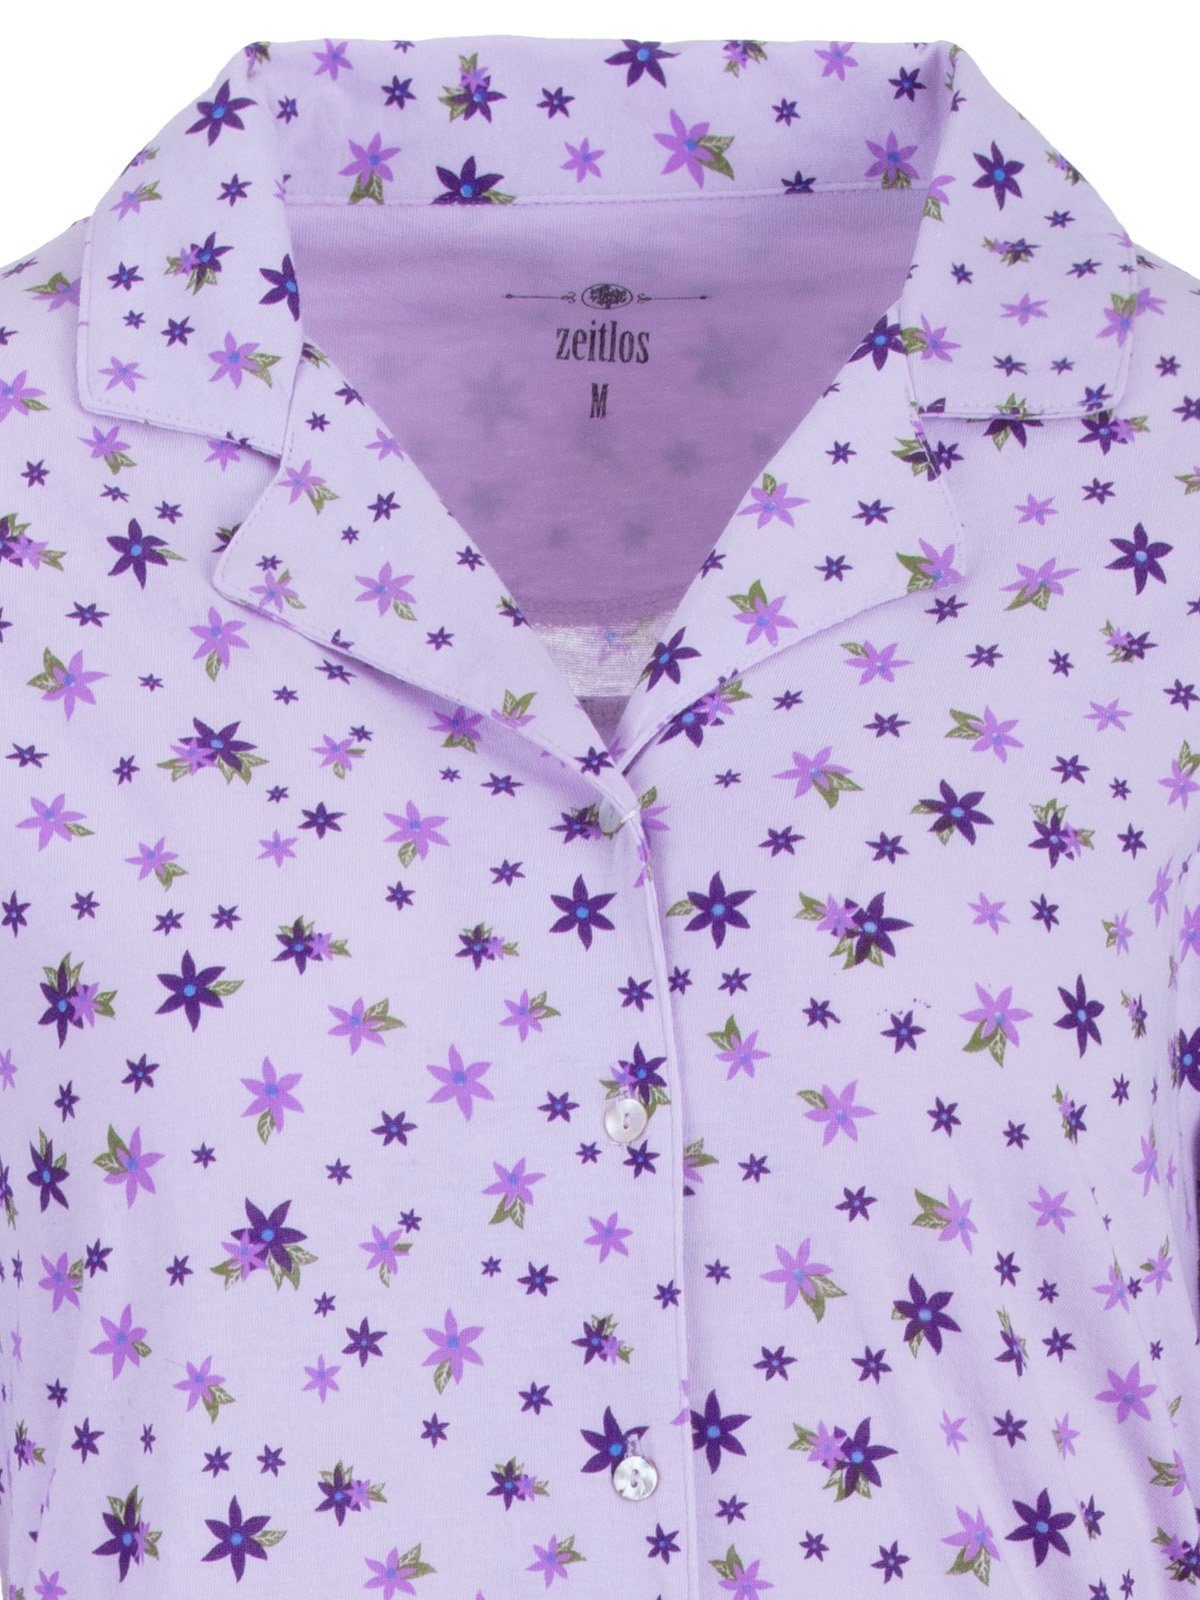 Langarm - zeitlos Nachthemd Nachthemd Sternblumen flieder